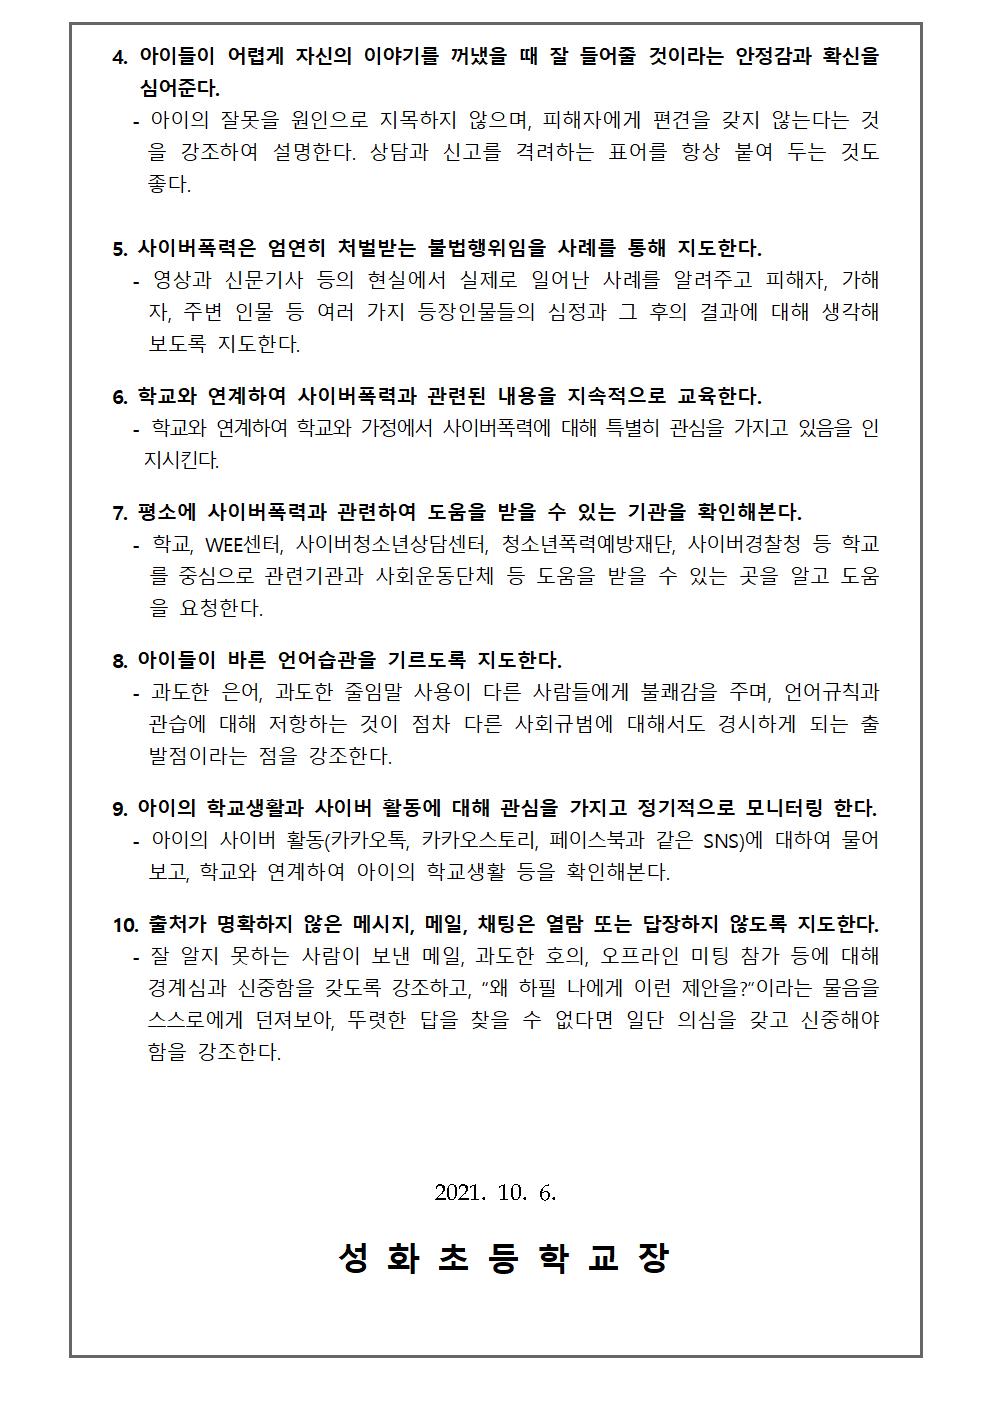 2학기 학부모 정보통신윤리교육 가정통신문002